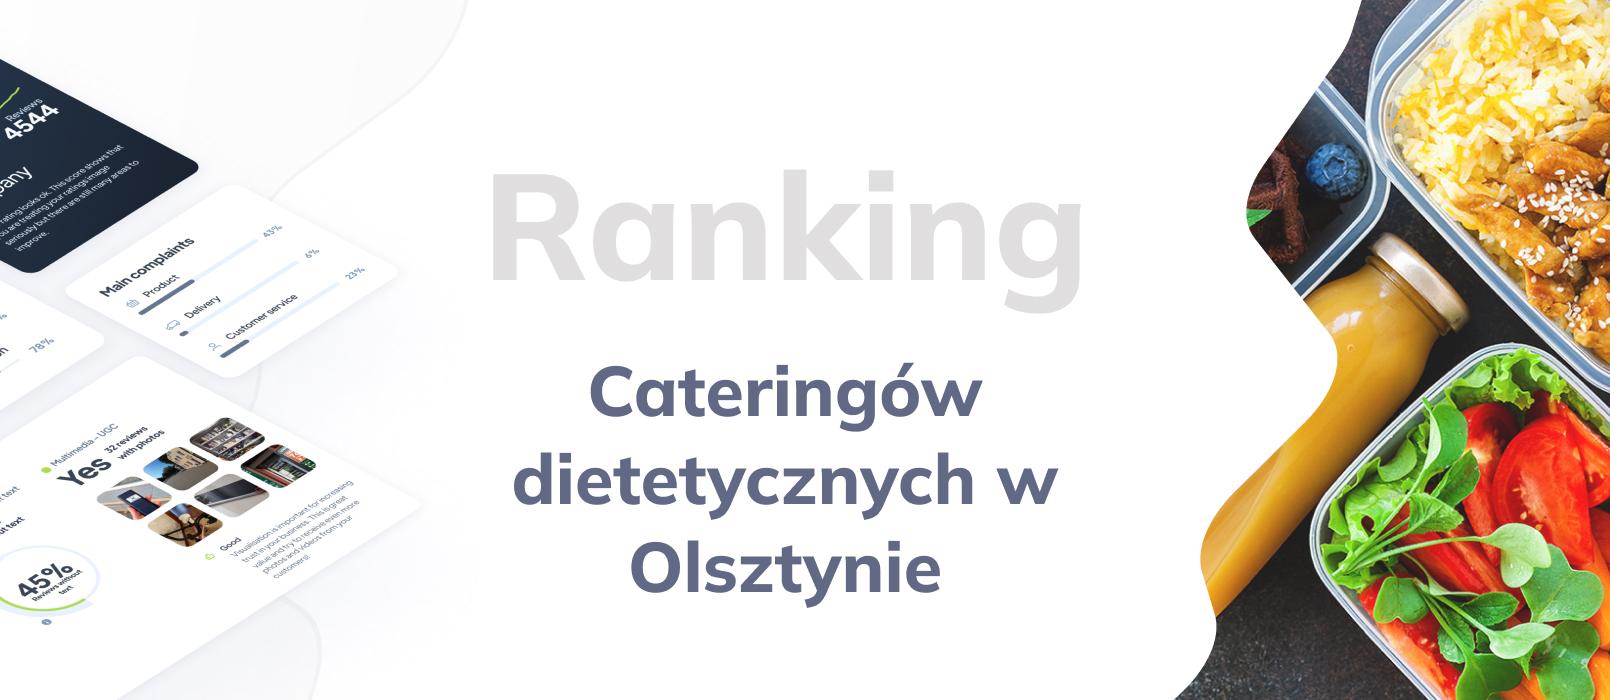 Cateringi dietetyczne w Olsztynie - ranking TOP 10